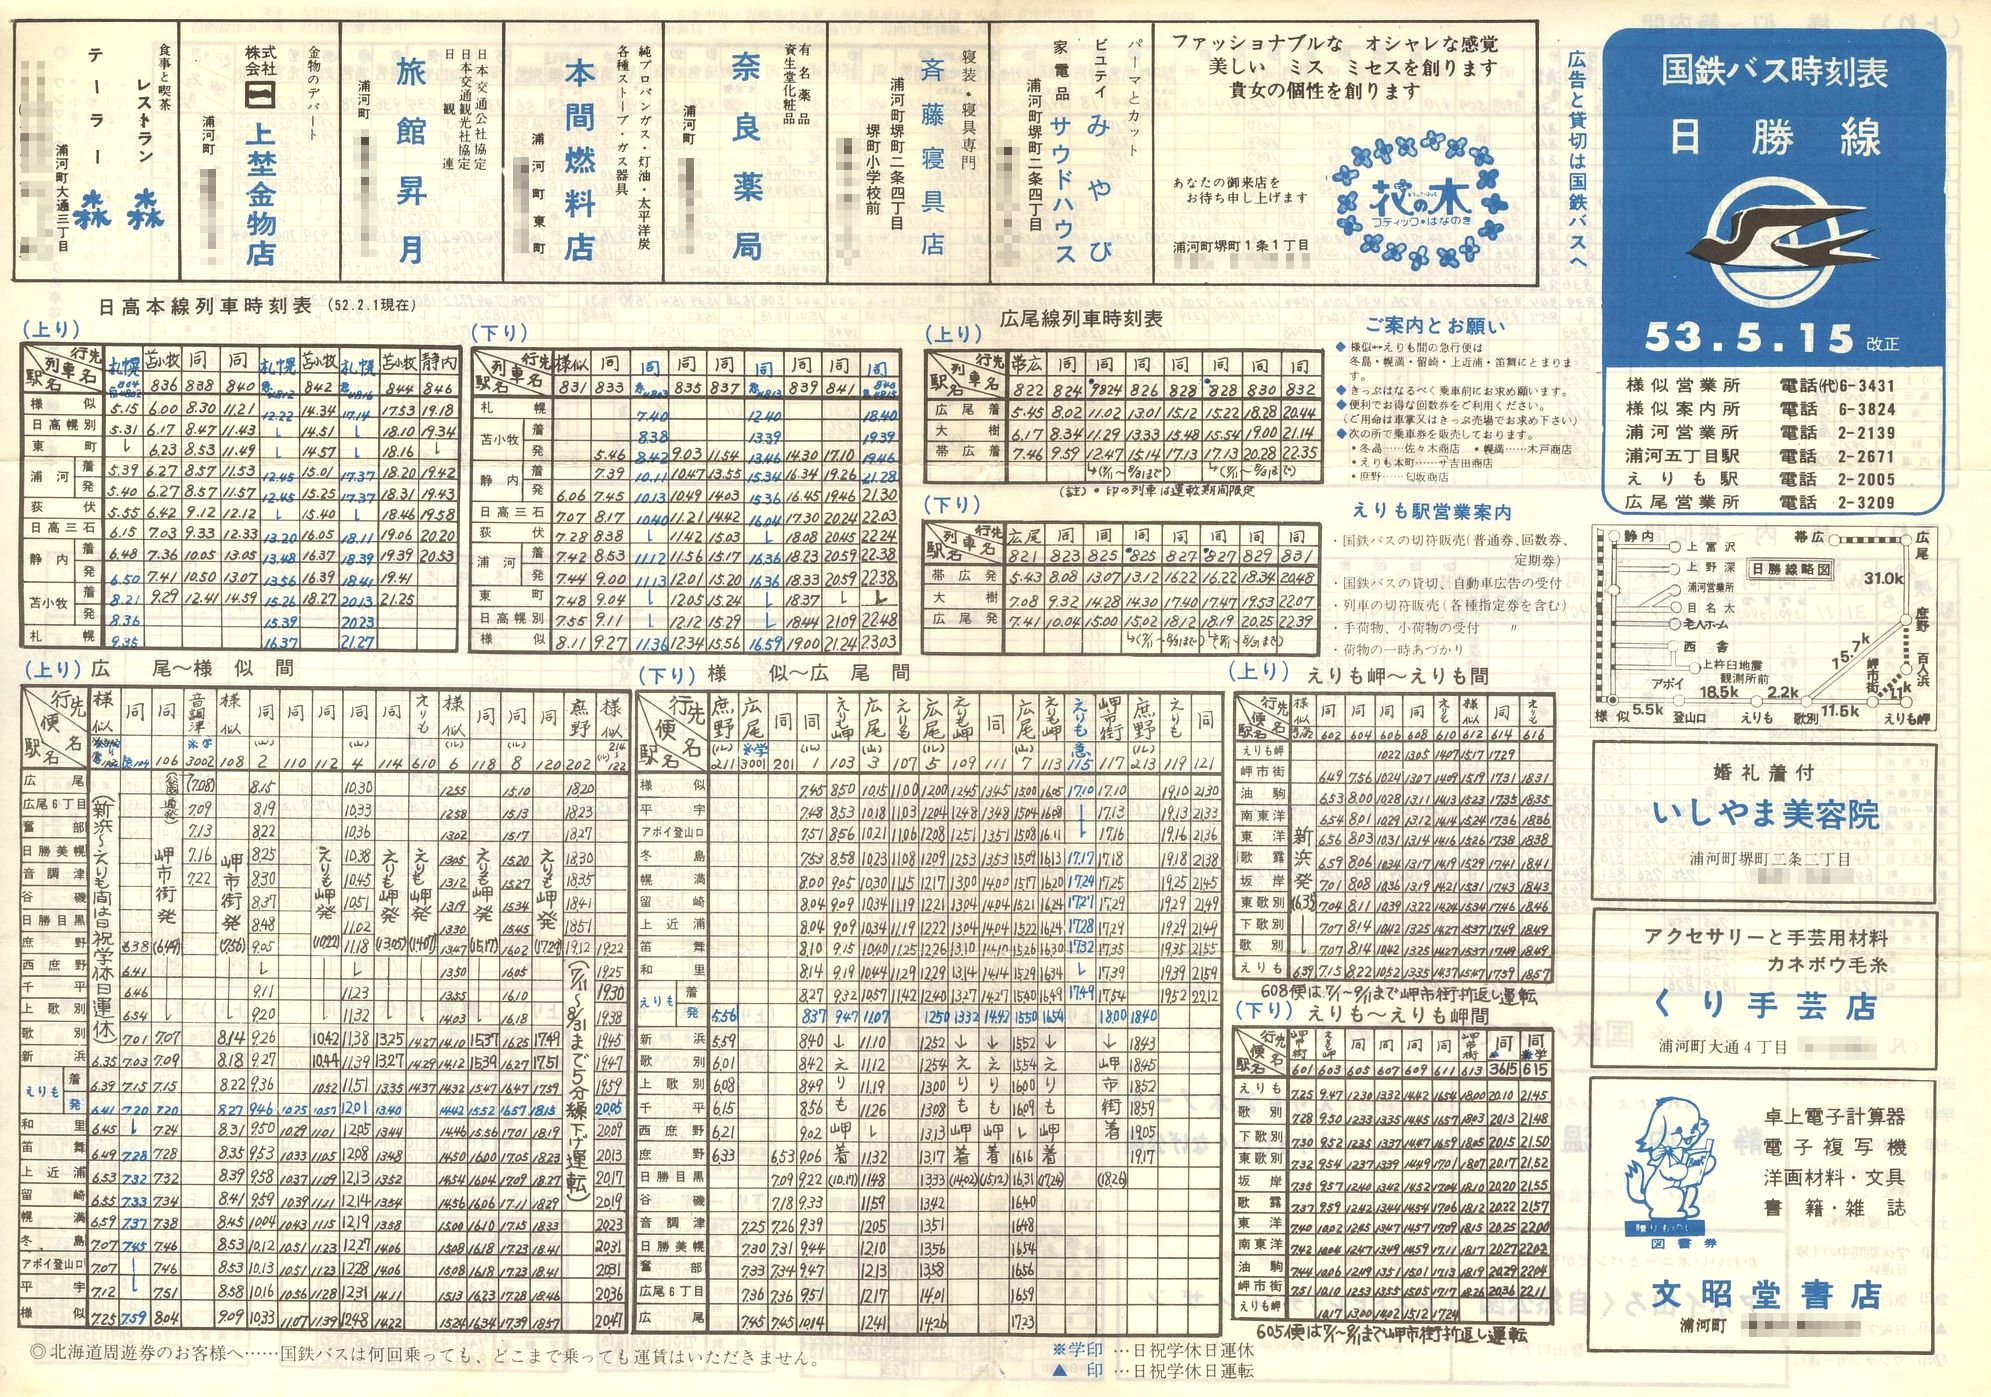 1978-05-15改正_国鉄バス_日勝線時刻表表面